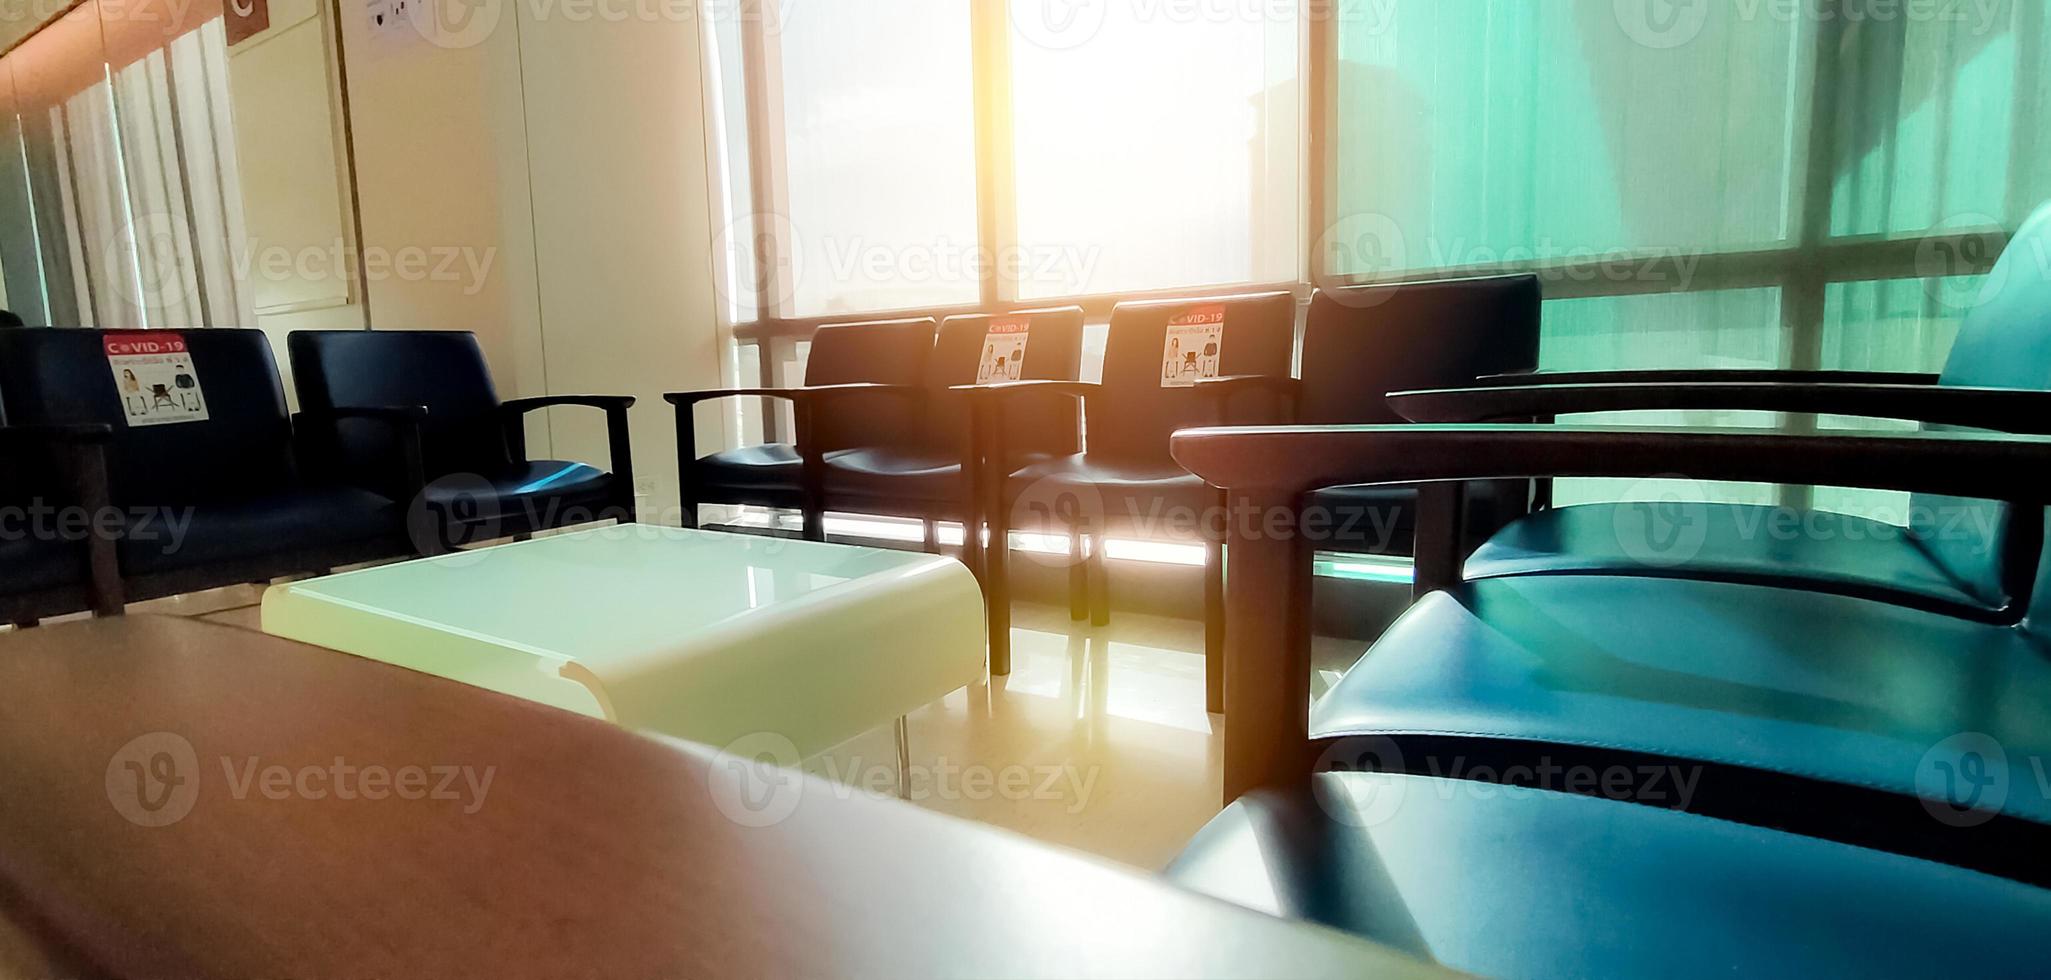 riduzione dei contatti. sedia blu scuro vuota con spazio per la distanza sociale per prevenire il coronavirus covid-19 nella sala d'attesa in ufficio per la coda d'attesa. sedia pubblica per il distanziamento sociale nella nuova normalità. foto